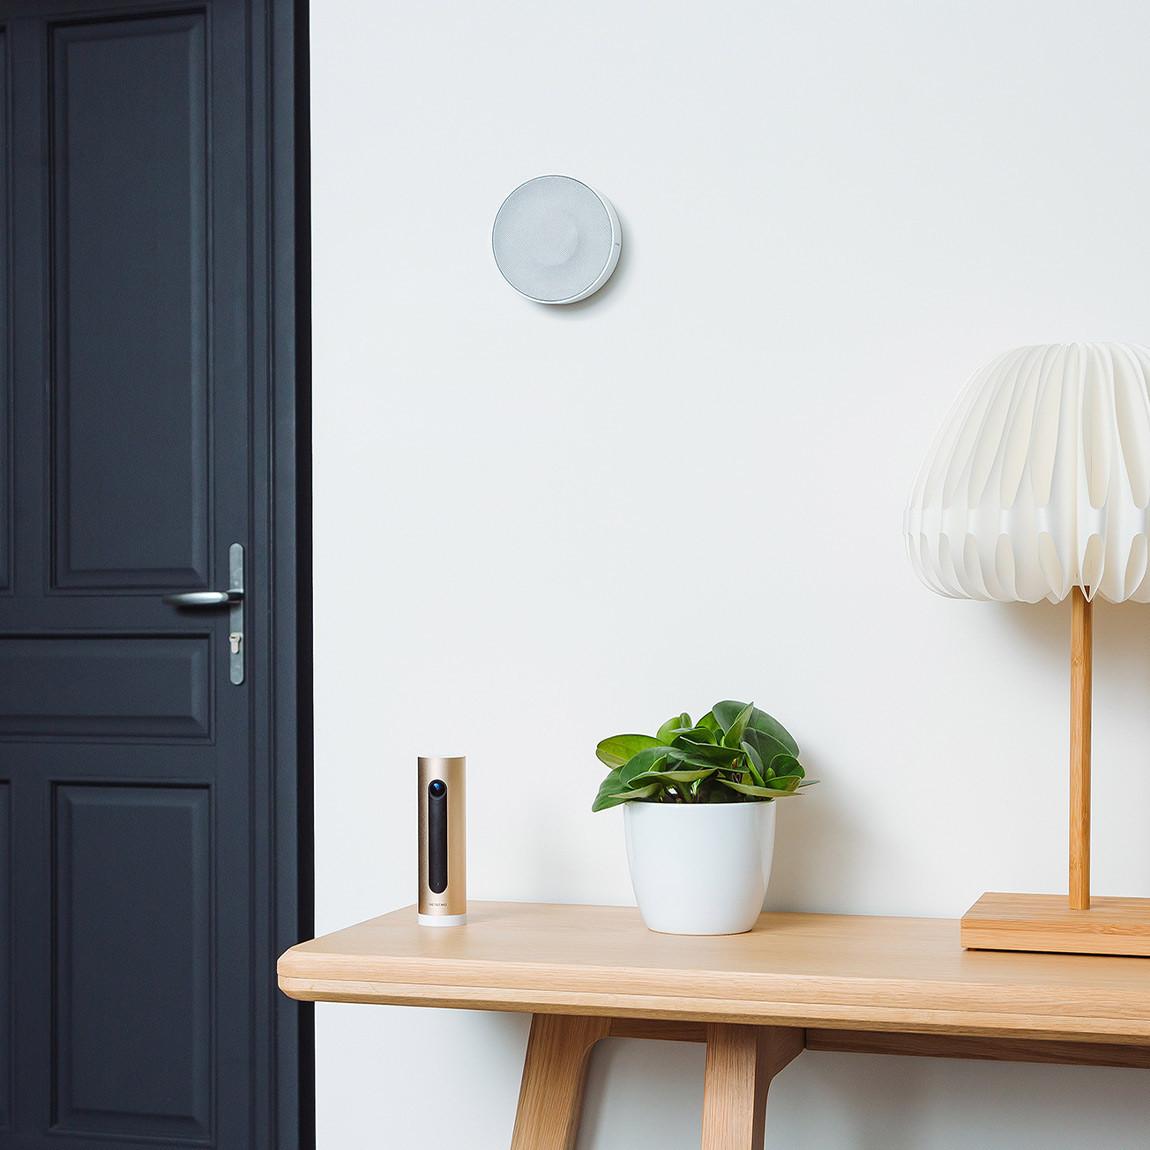 Netatmo smarte Innen-Alarmsirene mit Innenkamera an der Wand neben der Tür